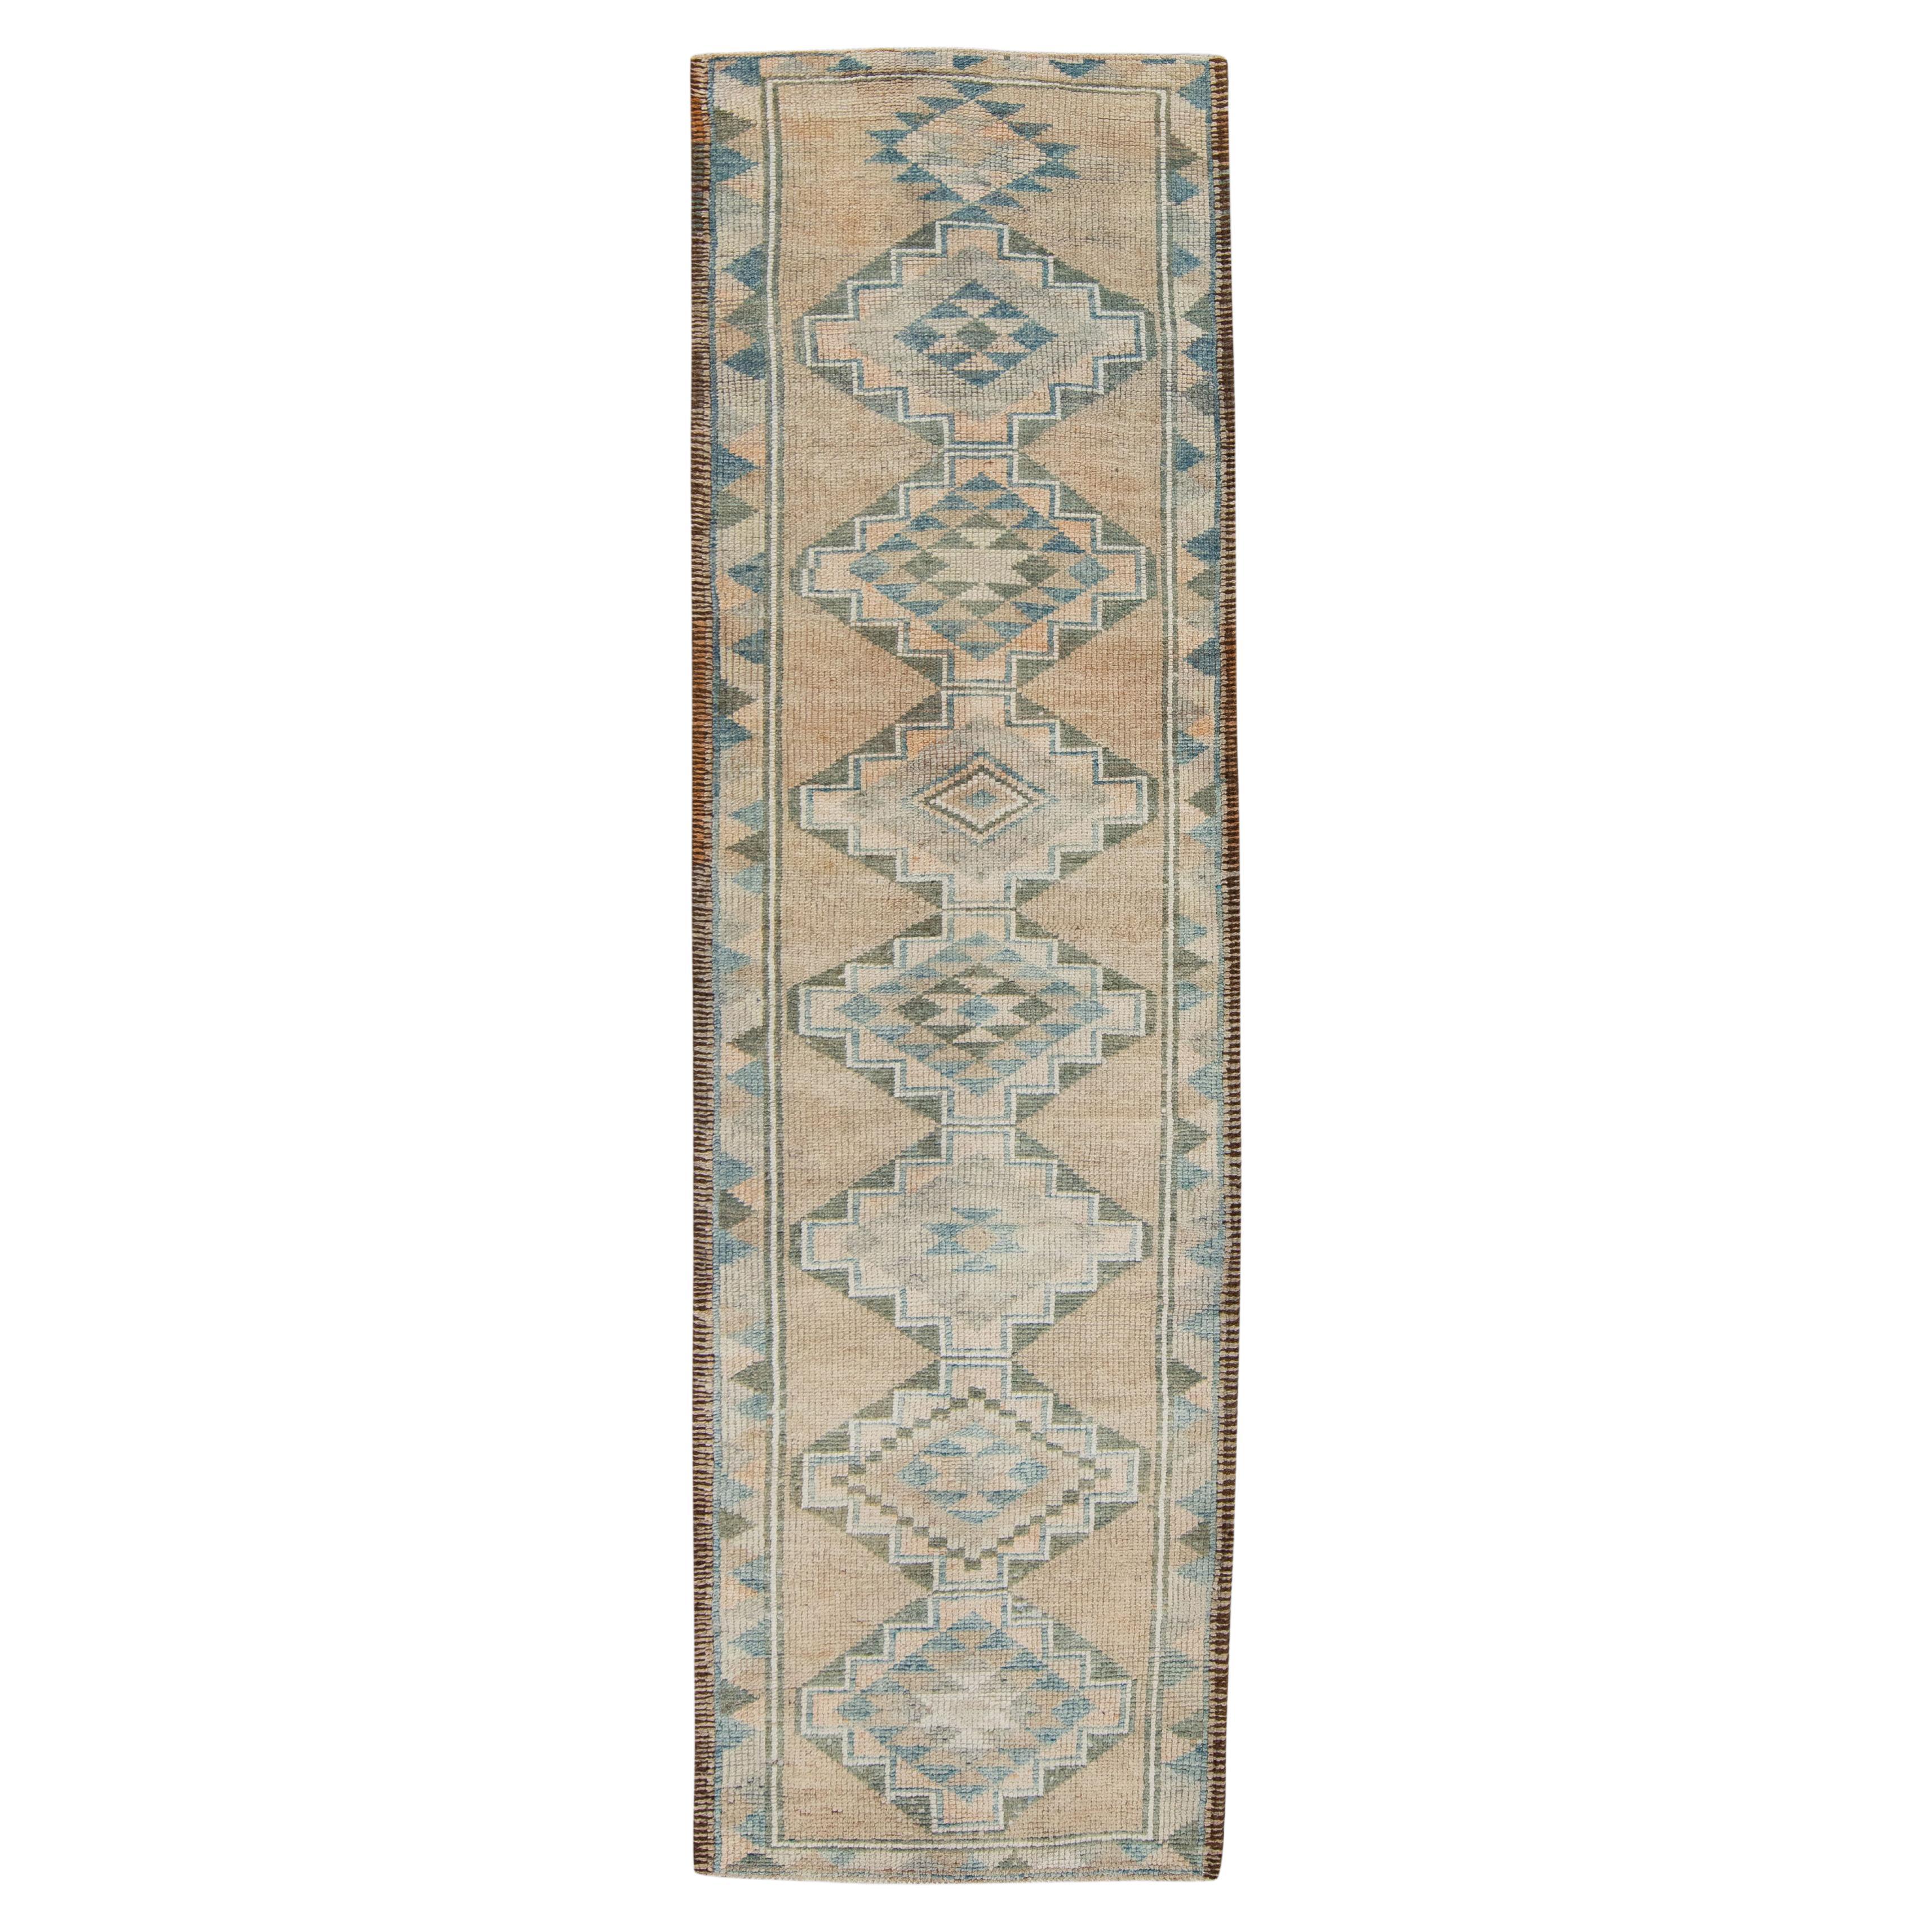 Handgefertigter türkischer Vintage-Teppich 2'10"x 10'9"